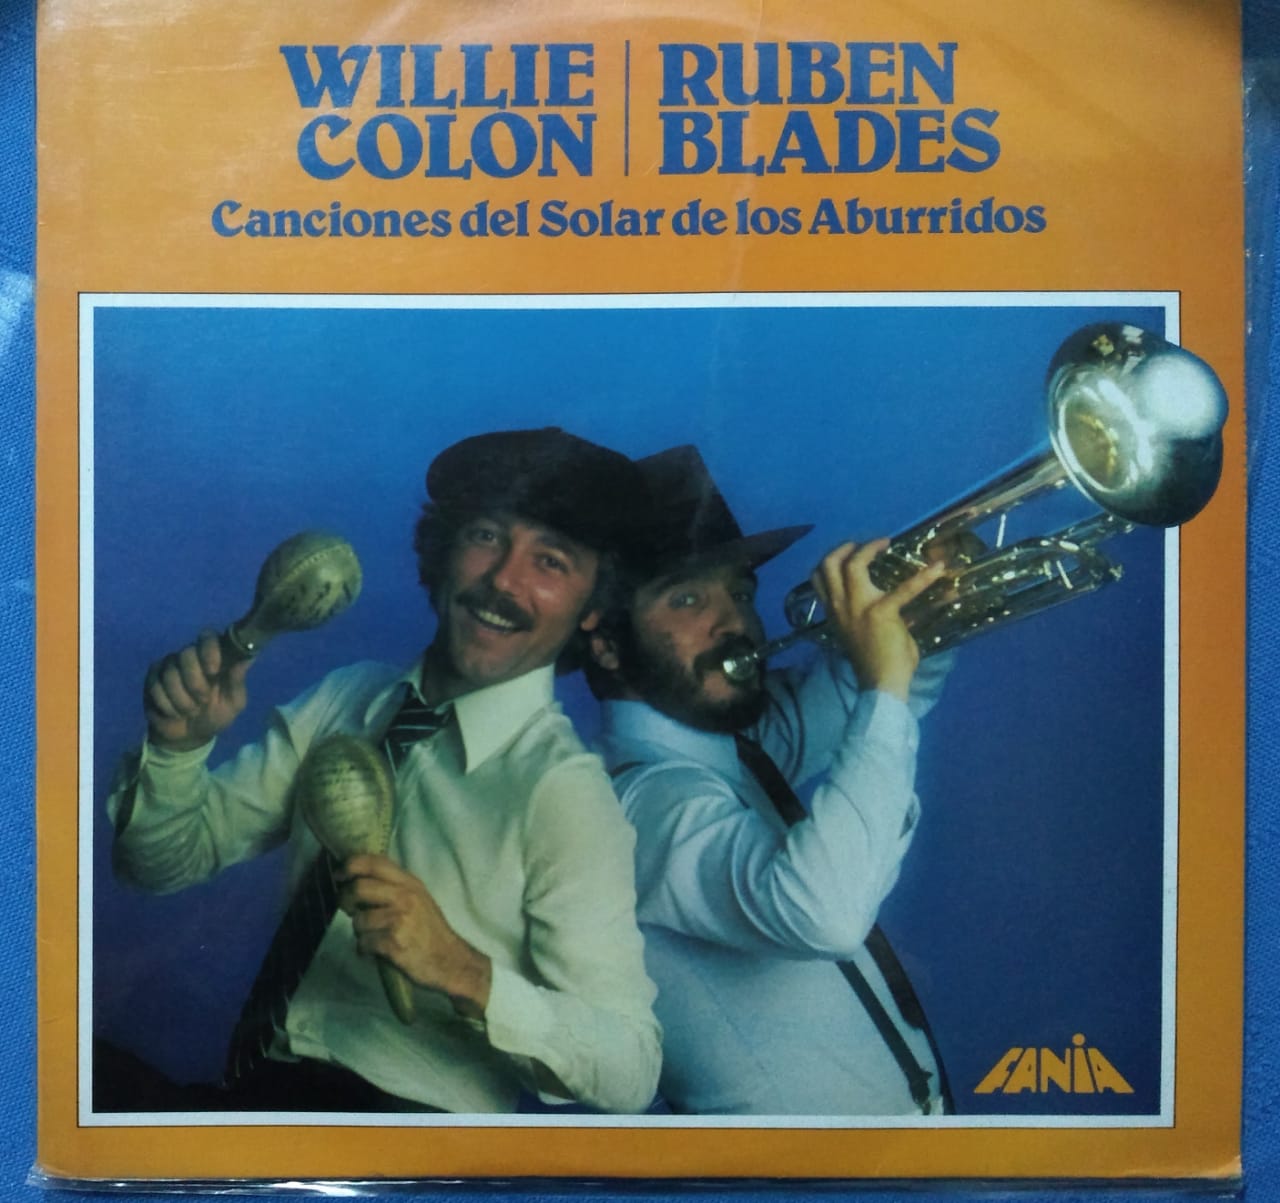 Willie Colón y Ruben Blades, Canciones del solar de los aburridos. Foto: John Cerón.